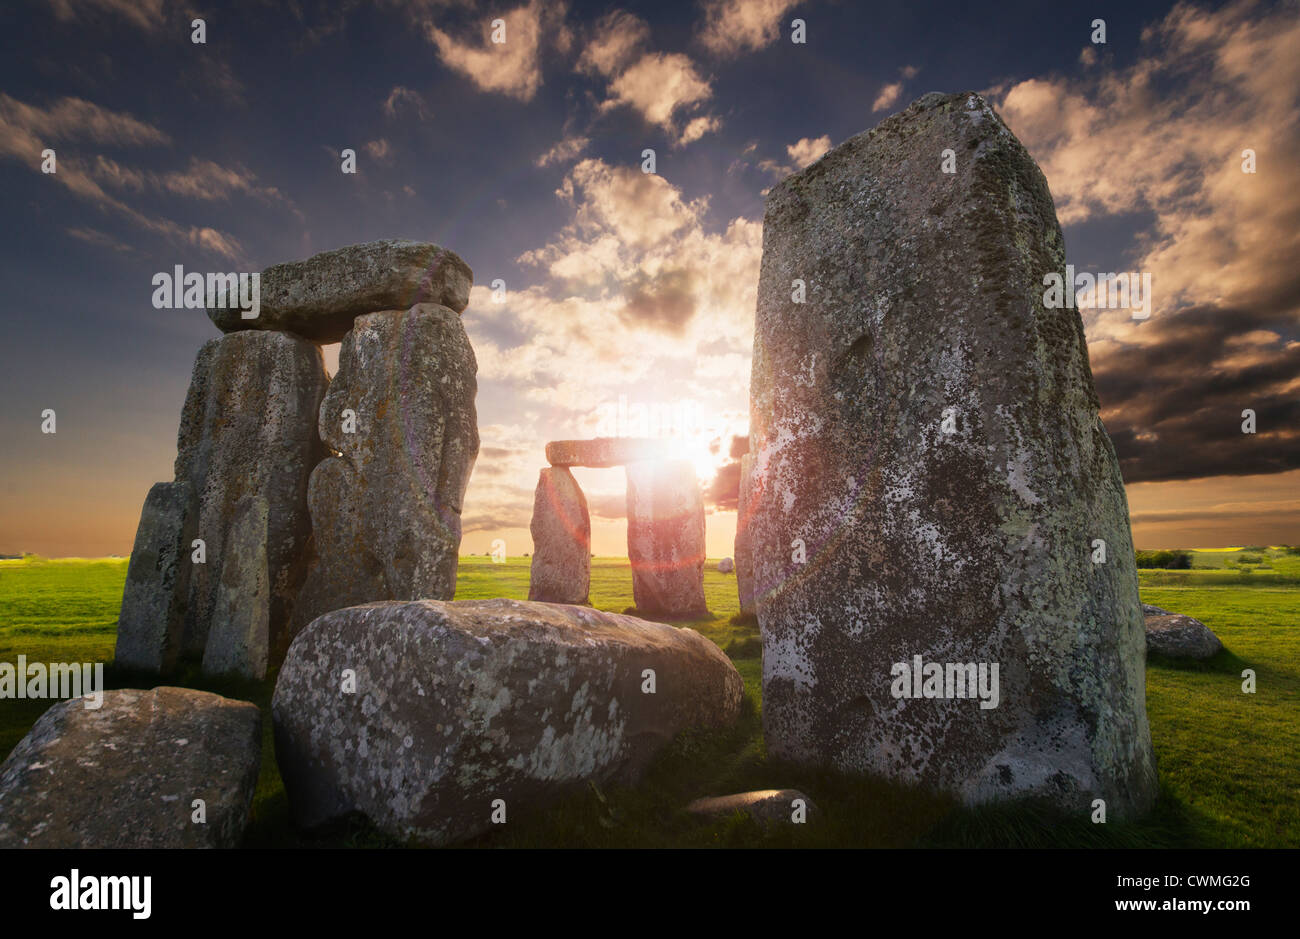 UK, England, Wiltshire, Stonehenge at sunset Stock Photo